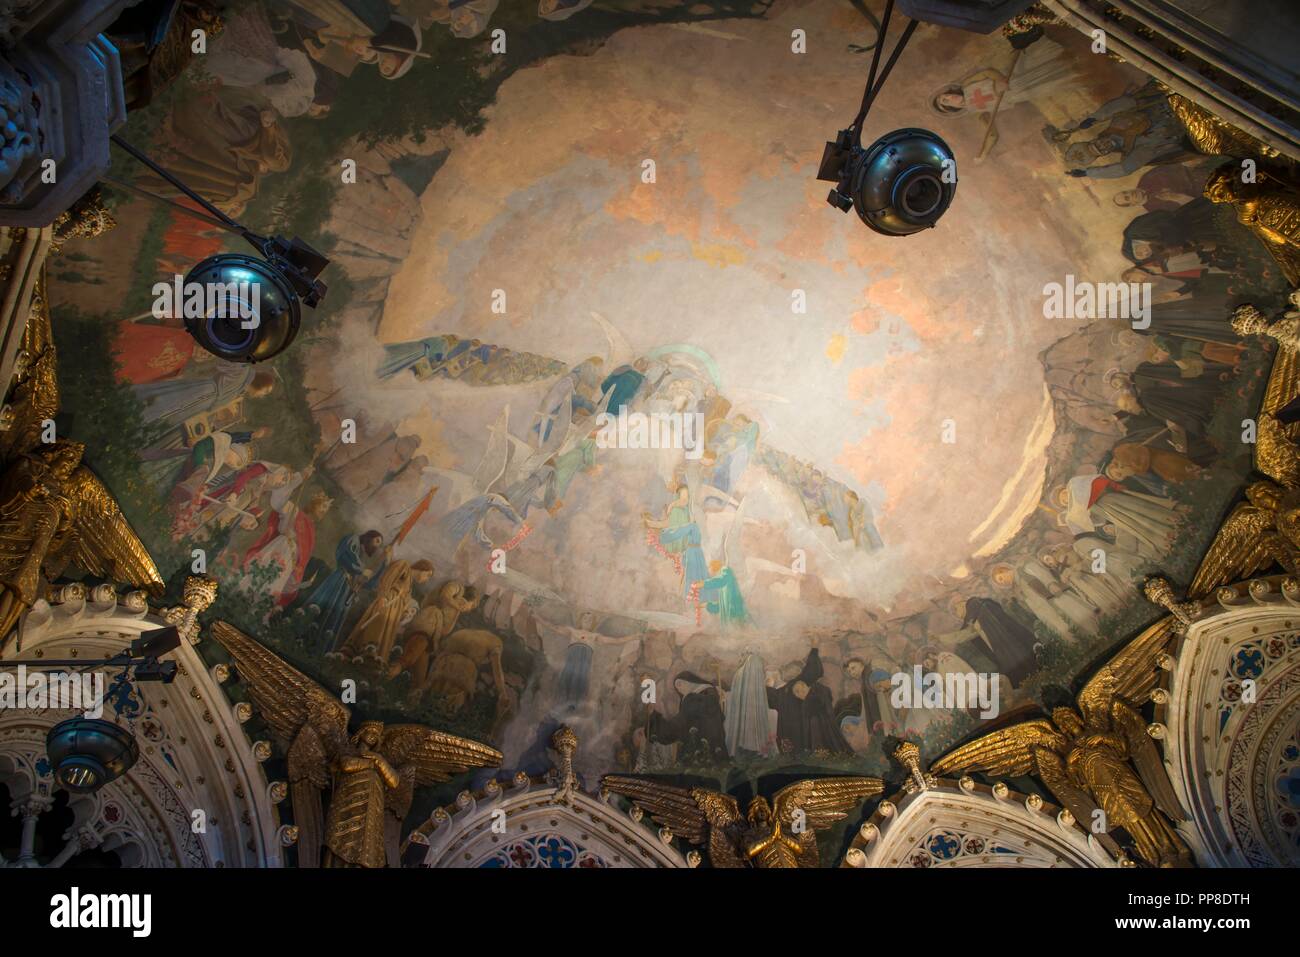 Detalle del Apoteosis de la Virgen, 1896-1898. Pintura mural de la cúpula del cambril de la Virgen. Monasterio de Montserrat. Cataluña. Autore: LLIMONA, Joan. Foto Stock